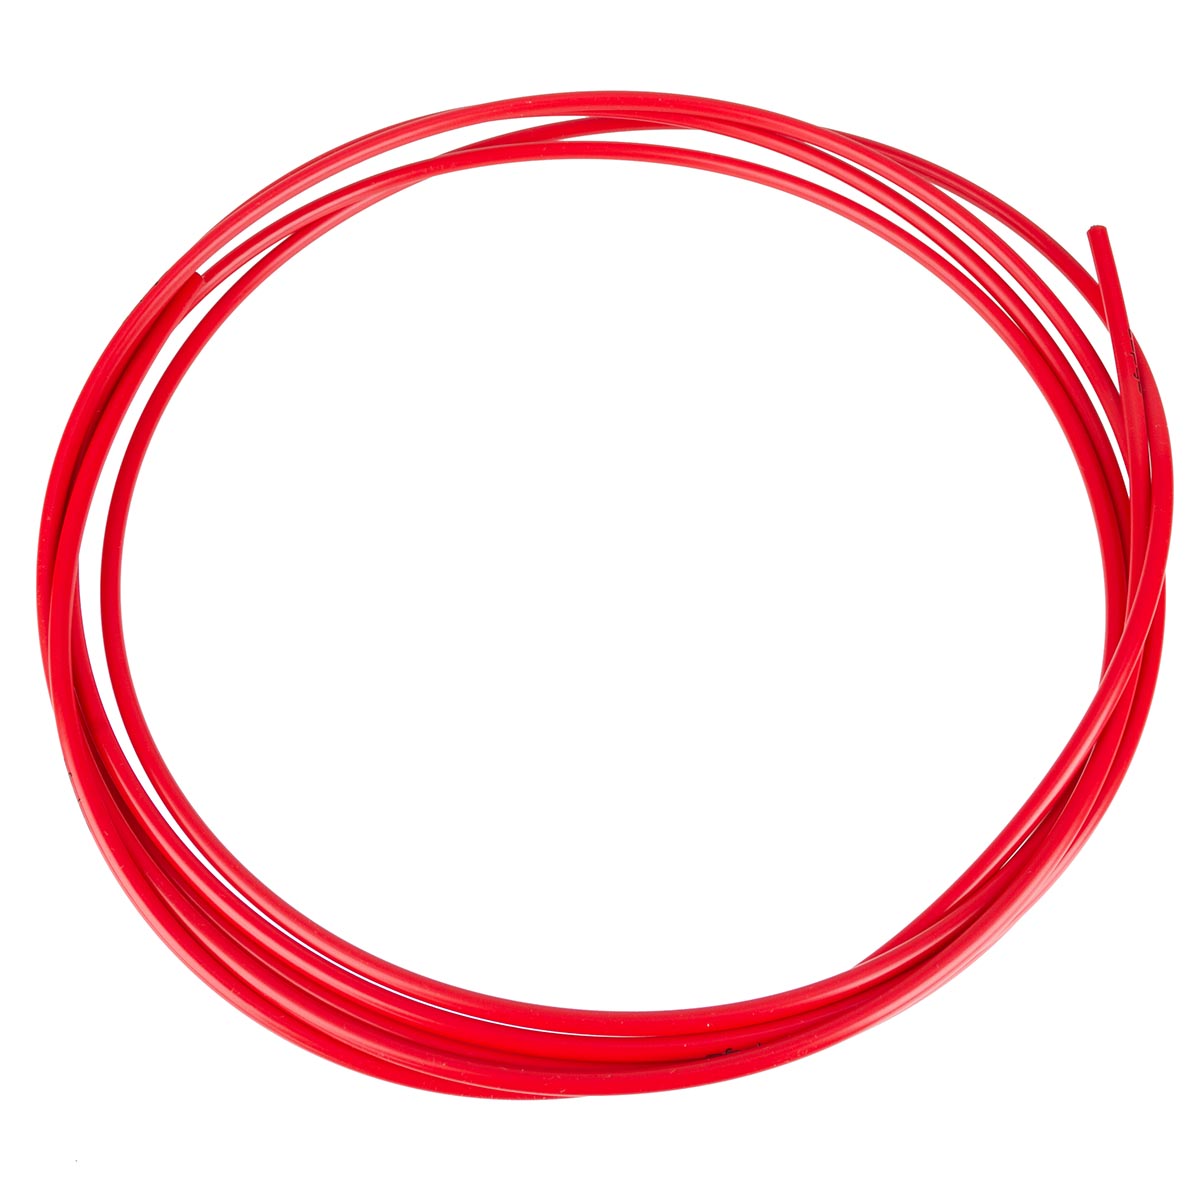 Capgo Cable Systems Gaine pour Câble Dérailleur Blue Line Tomato Rouge